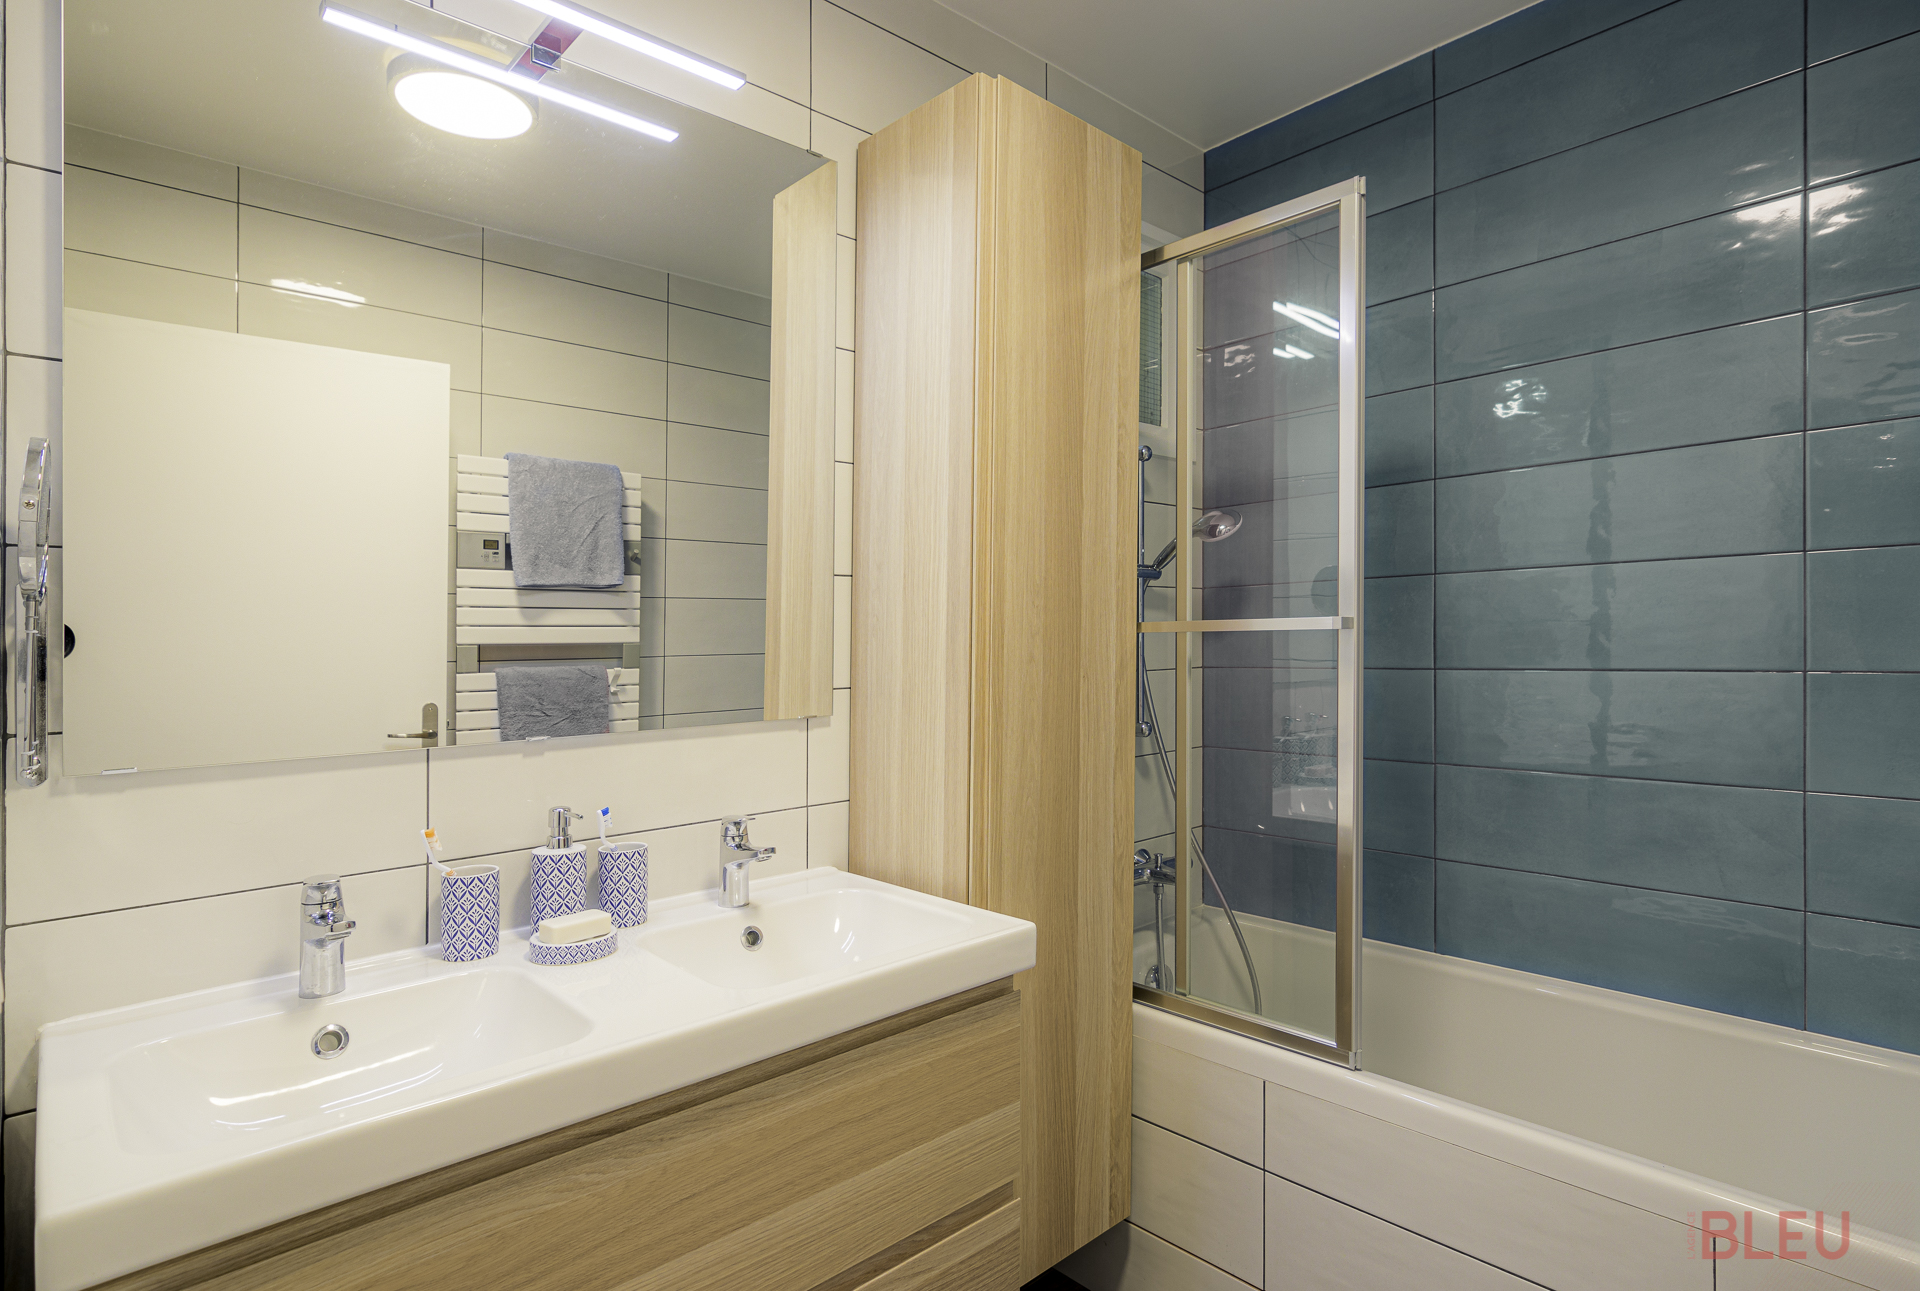 La rénovation de la salle de bain implique le remplacement de la grande baignoire par une baignoire de taille standard, permettant ainsi de libérer de l'espace. Un double plan vasque est installé avec un pare-baignoire pour éviter les éclaboussures.